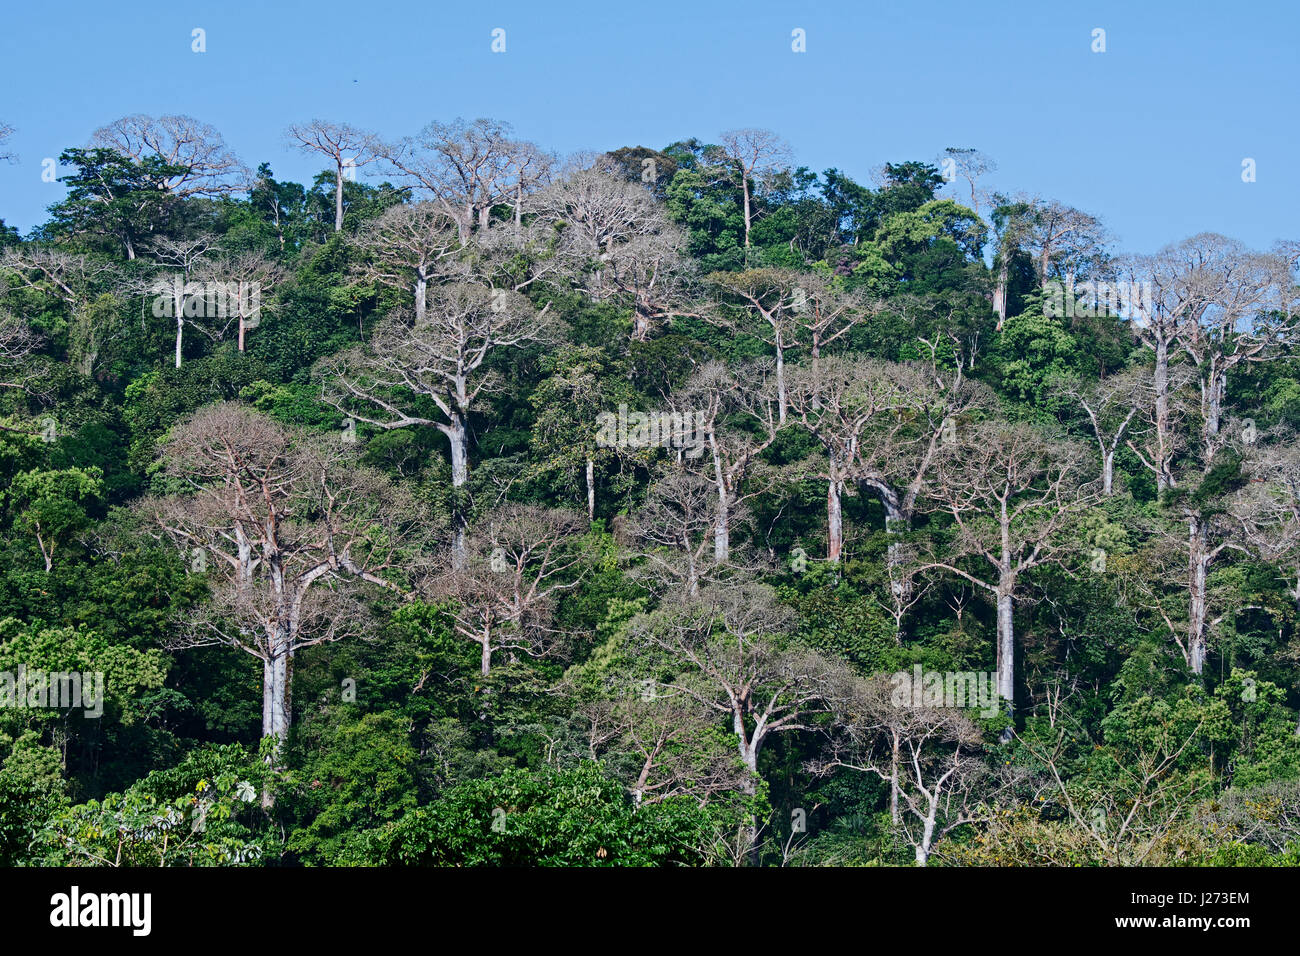 Selva tropical de tierras bajas y grandes árboles en el Cuipo Panamá Darién Foto de stock